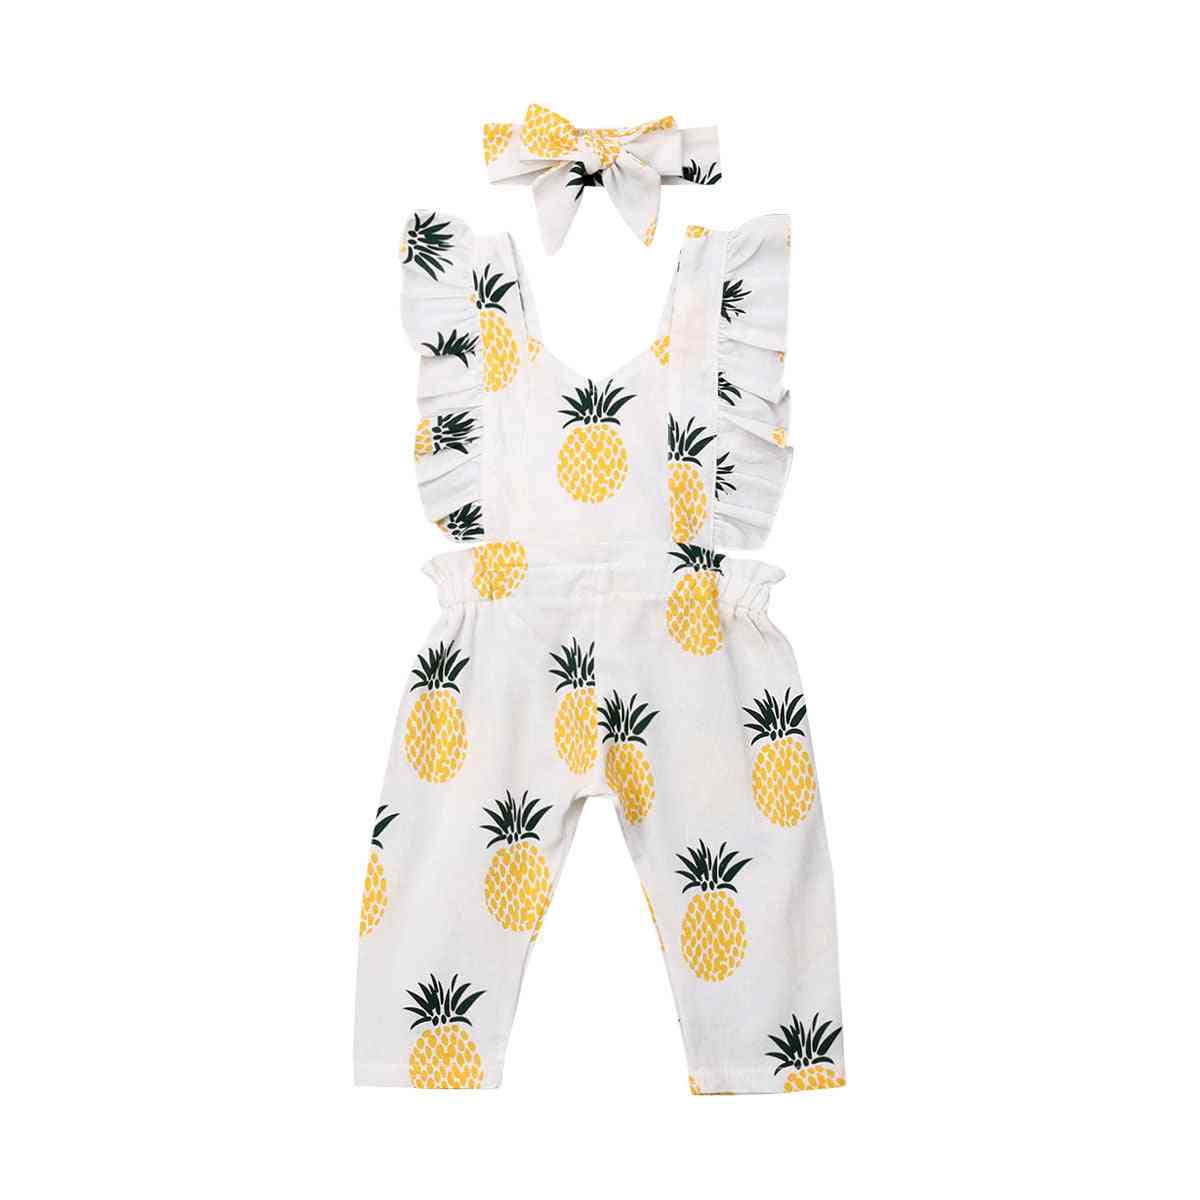 Oblačila za novorojenčke deklice brez rokavov runasti ananas tiskan kombinezon obleke za glavo obleke poletna oblačila